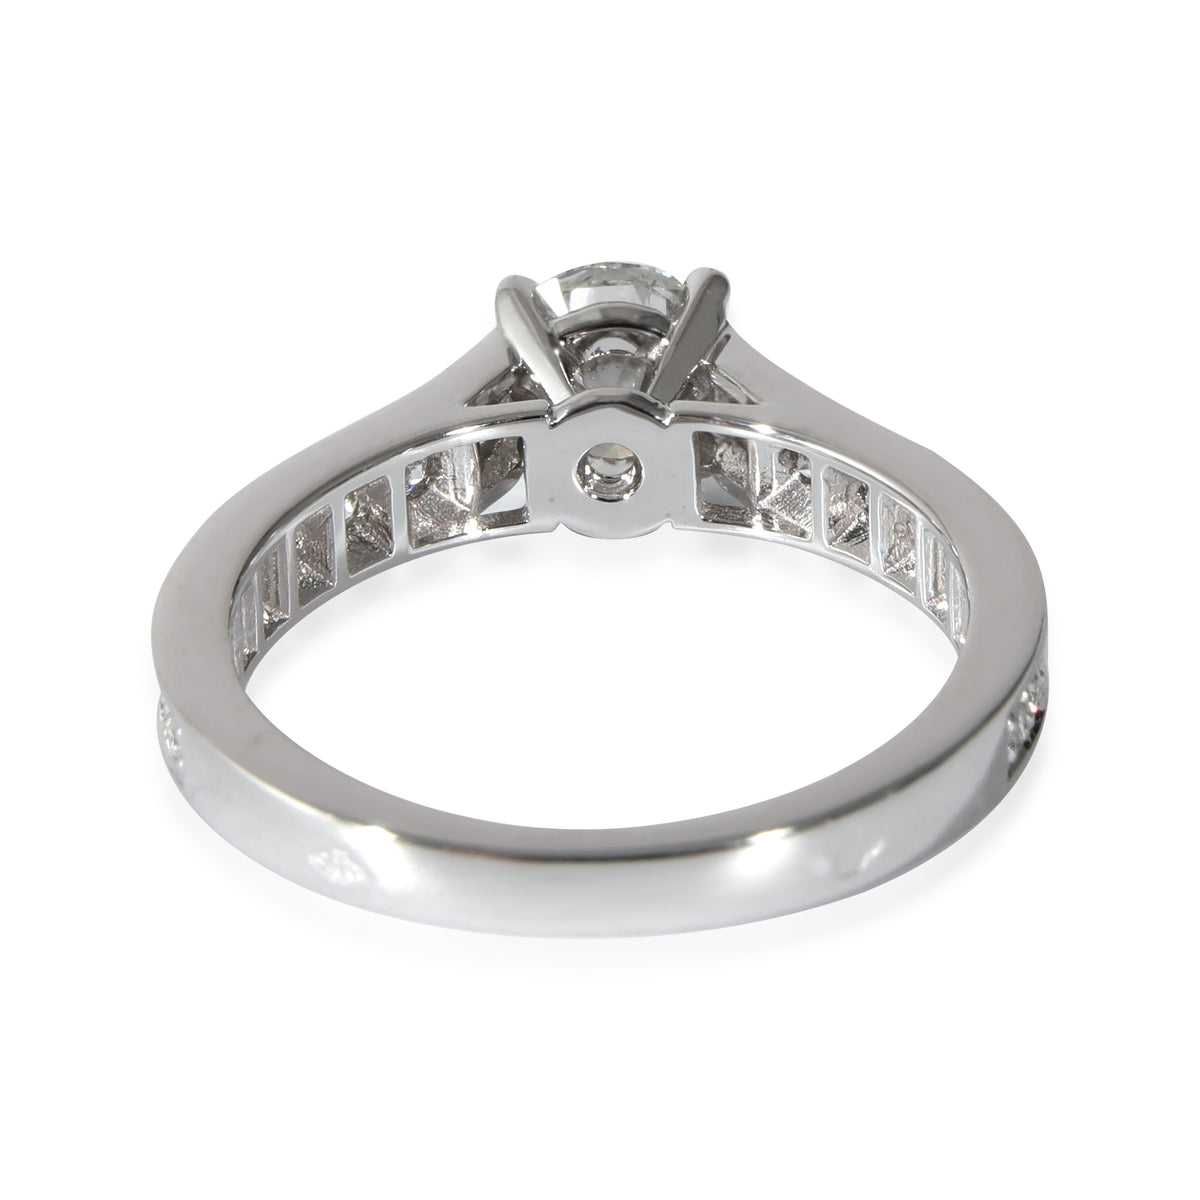 Cartier 1895 Diamond Engagement Ring in  Platinum G VS1 1 CTW